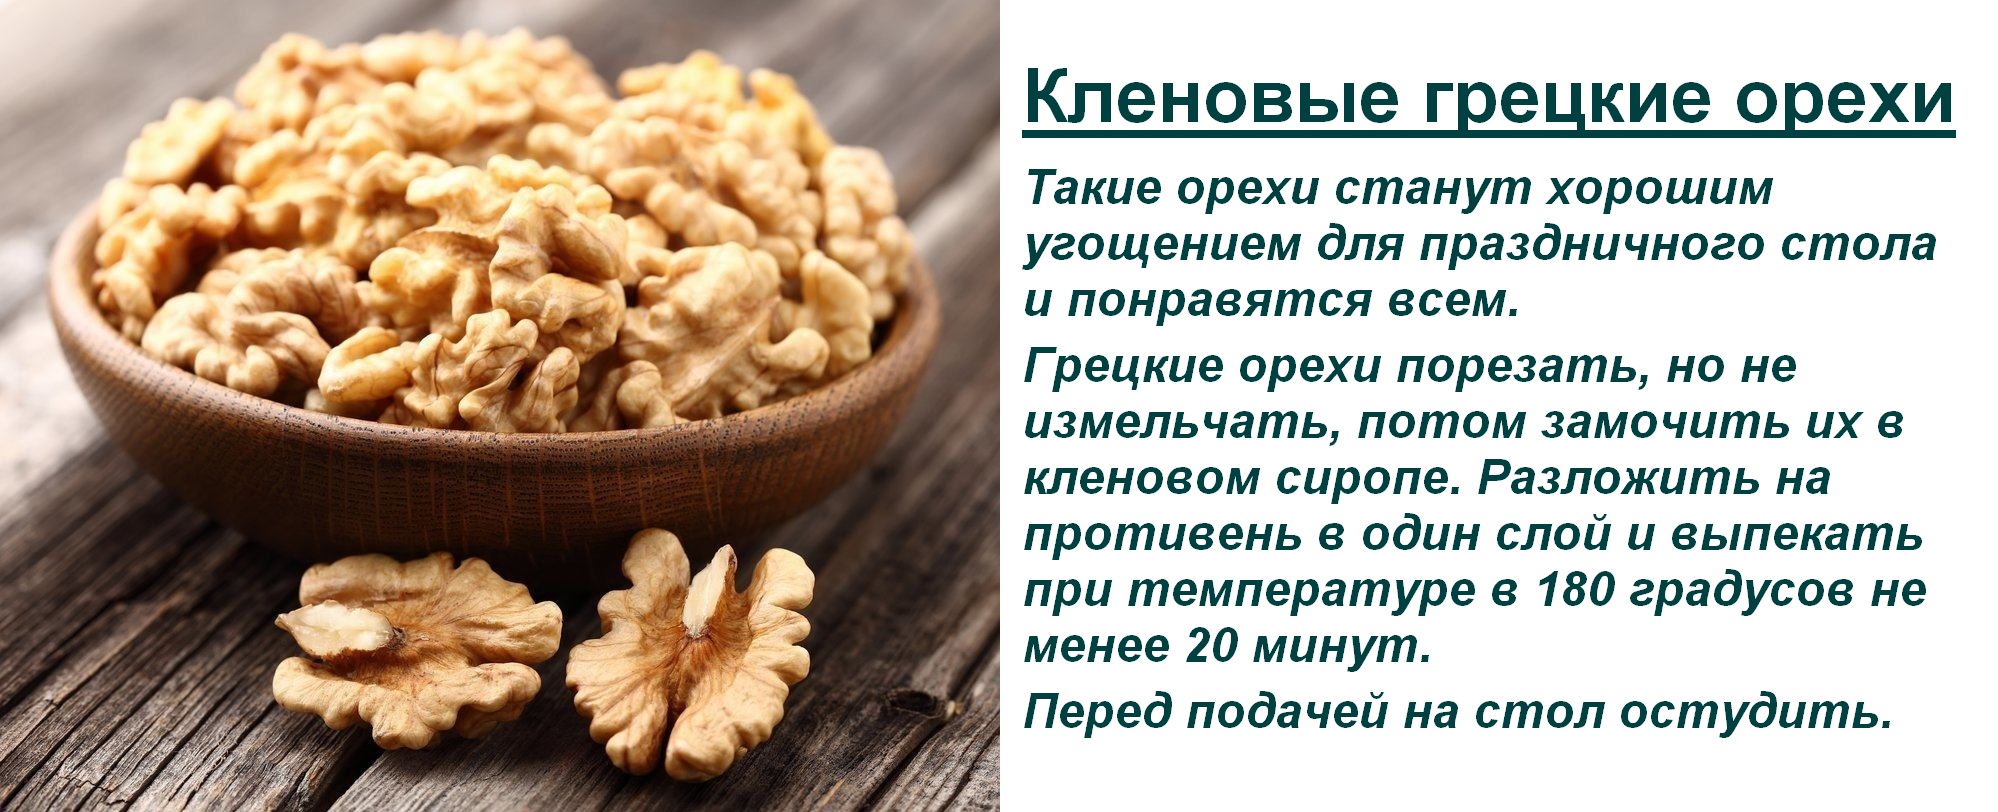 Грецкие орехи польза и вред для организма для женщин